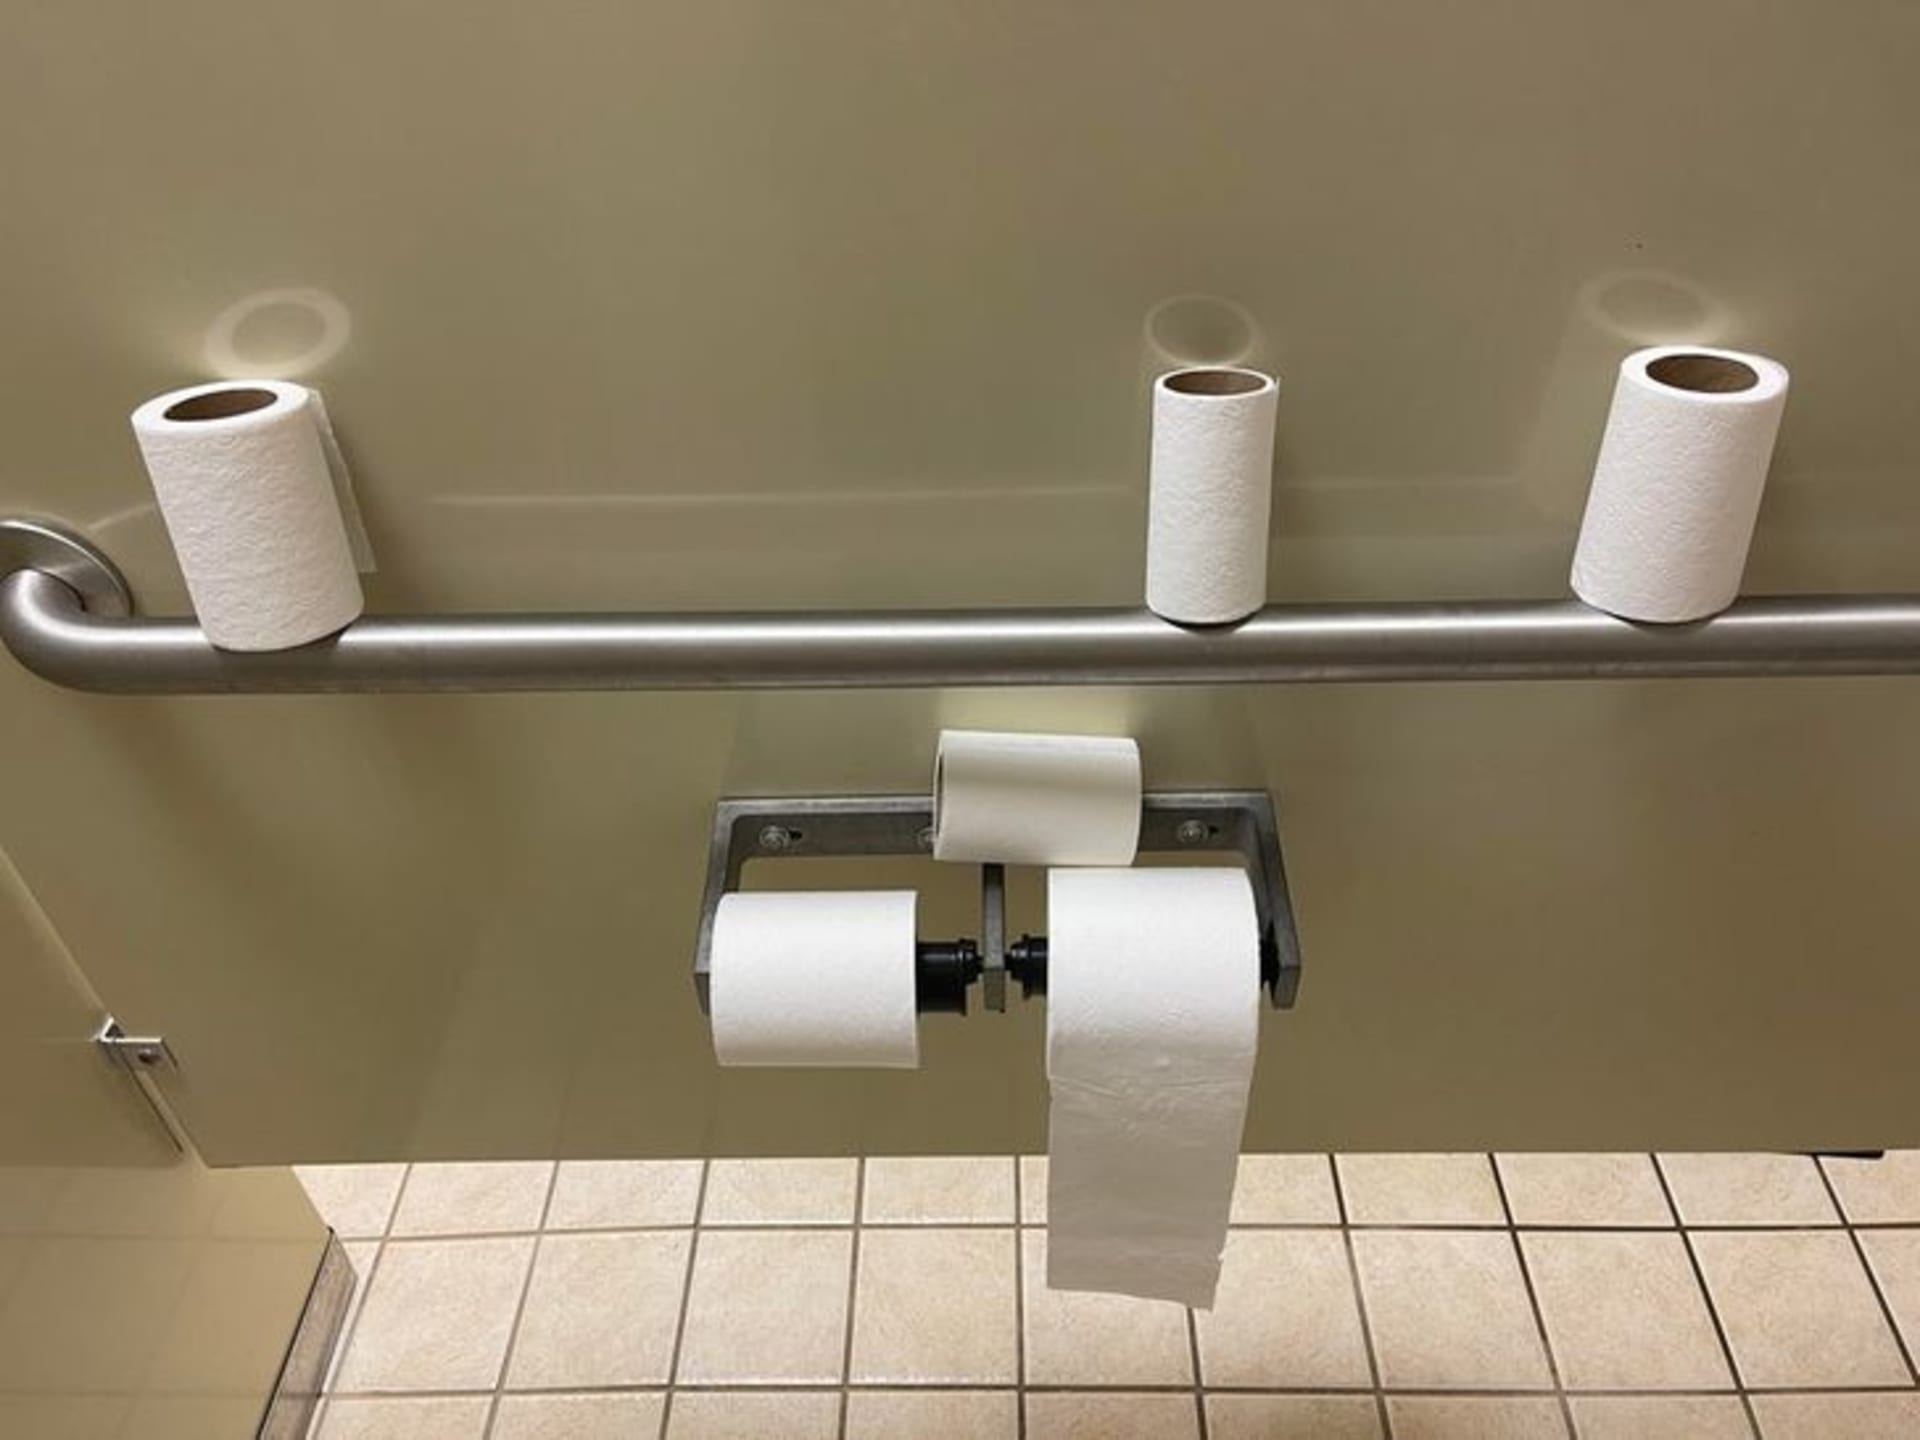 Jedna rulička toaleťáku evidentně nestačí.